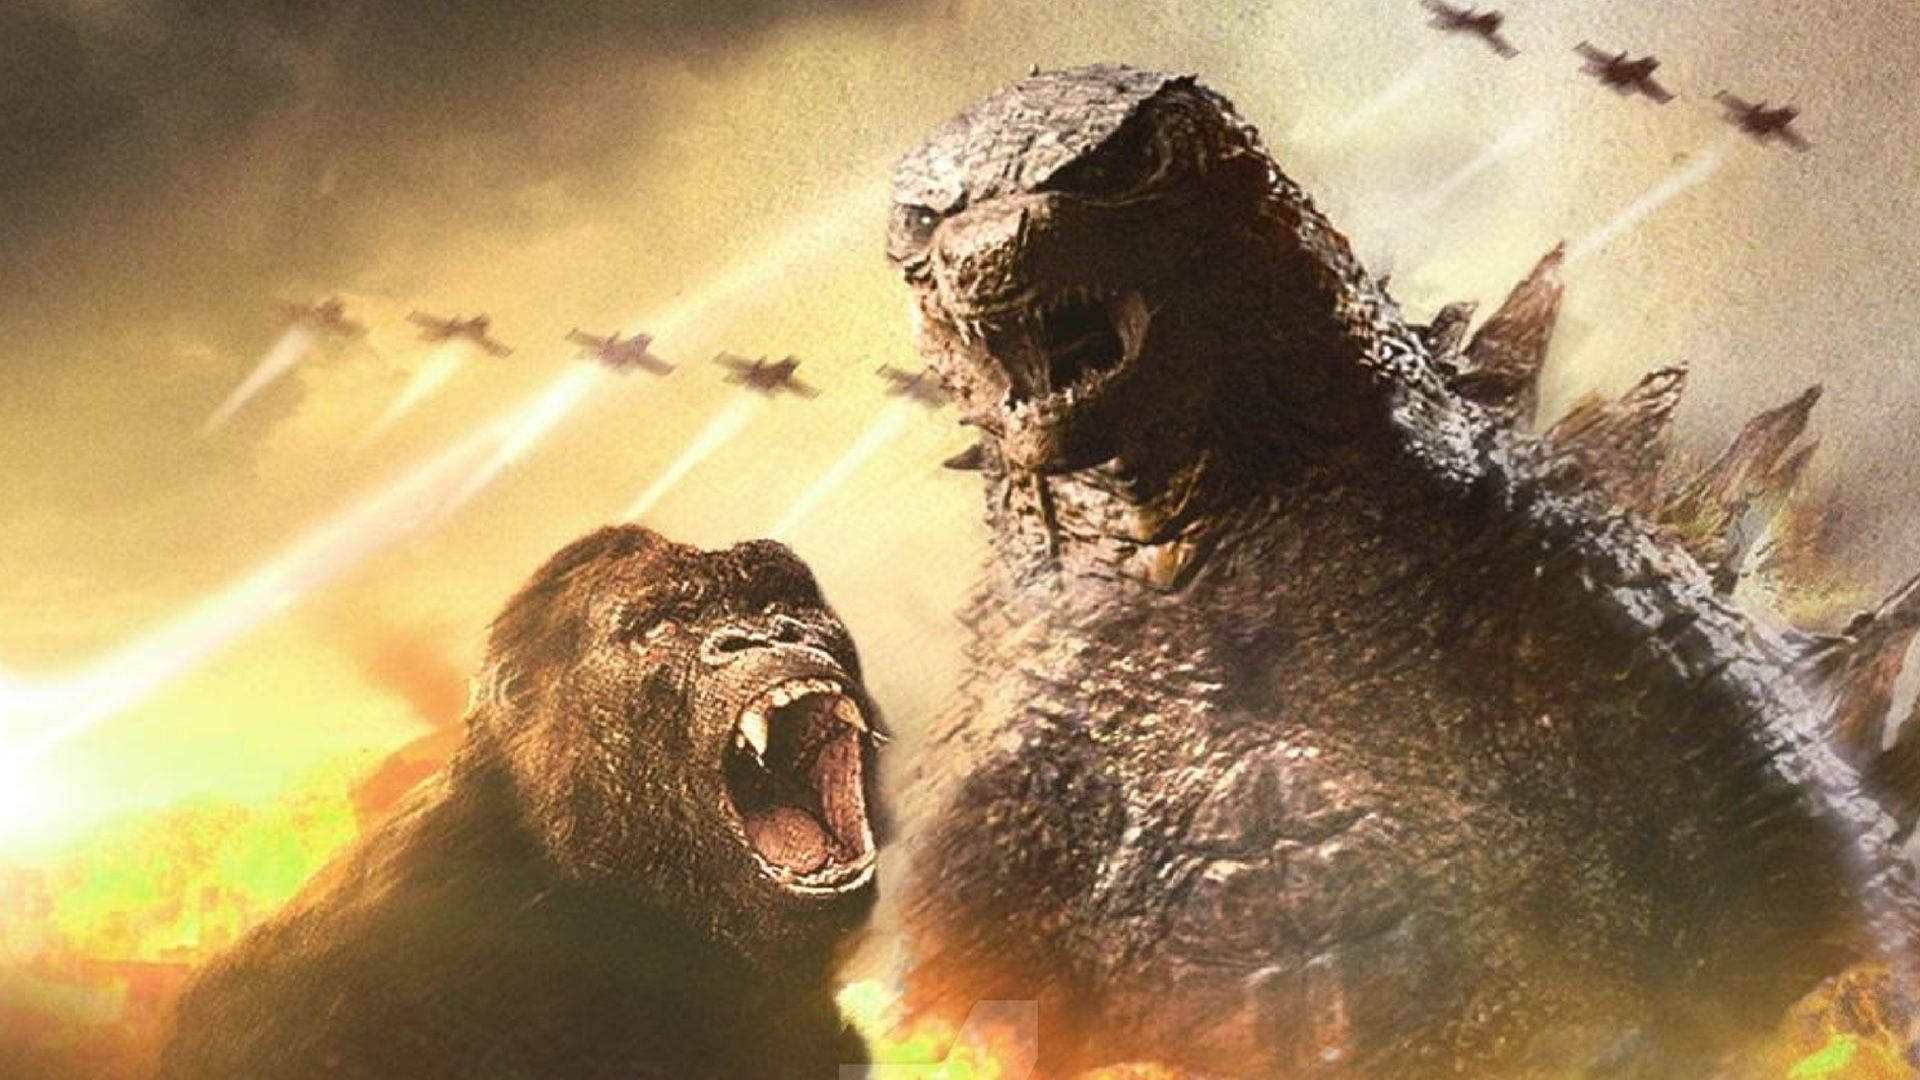 Screaming Godzilla Vs King Kong